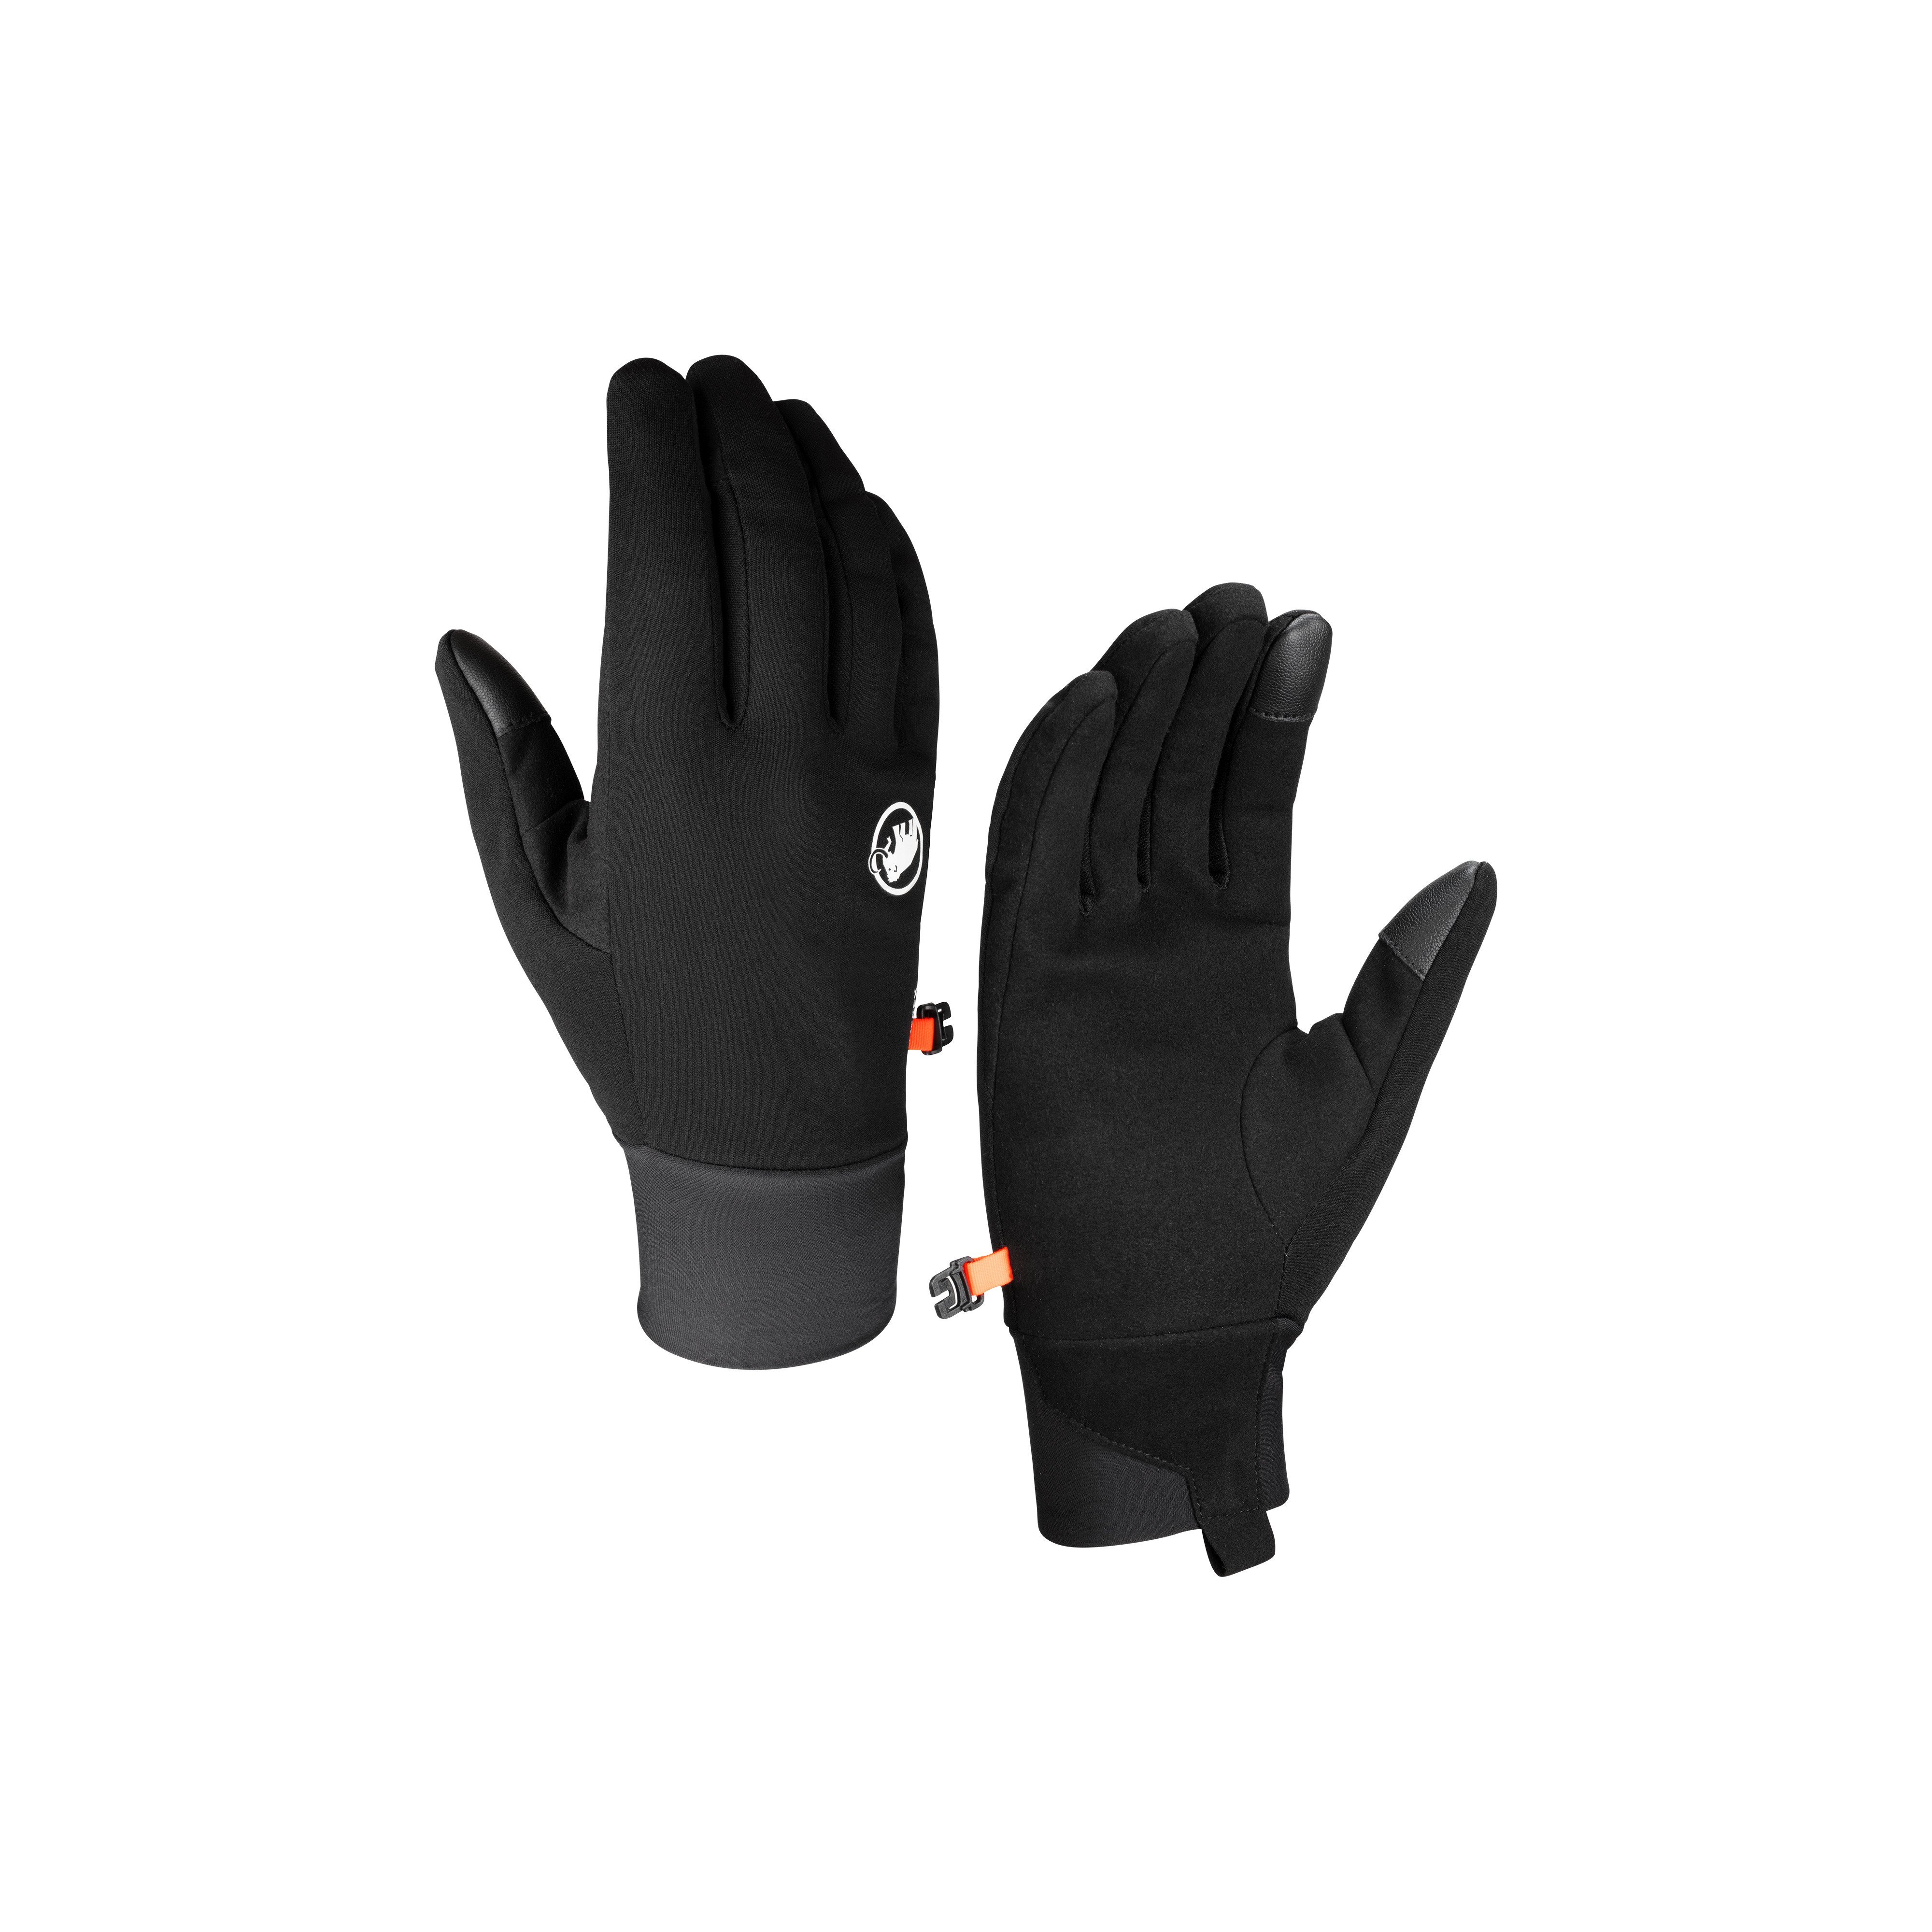 Astro Glove - black, 5 thumbnail